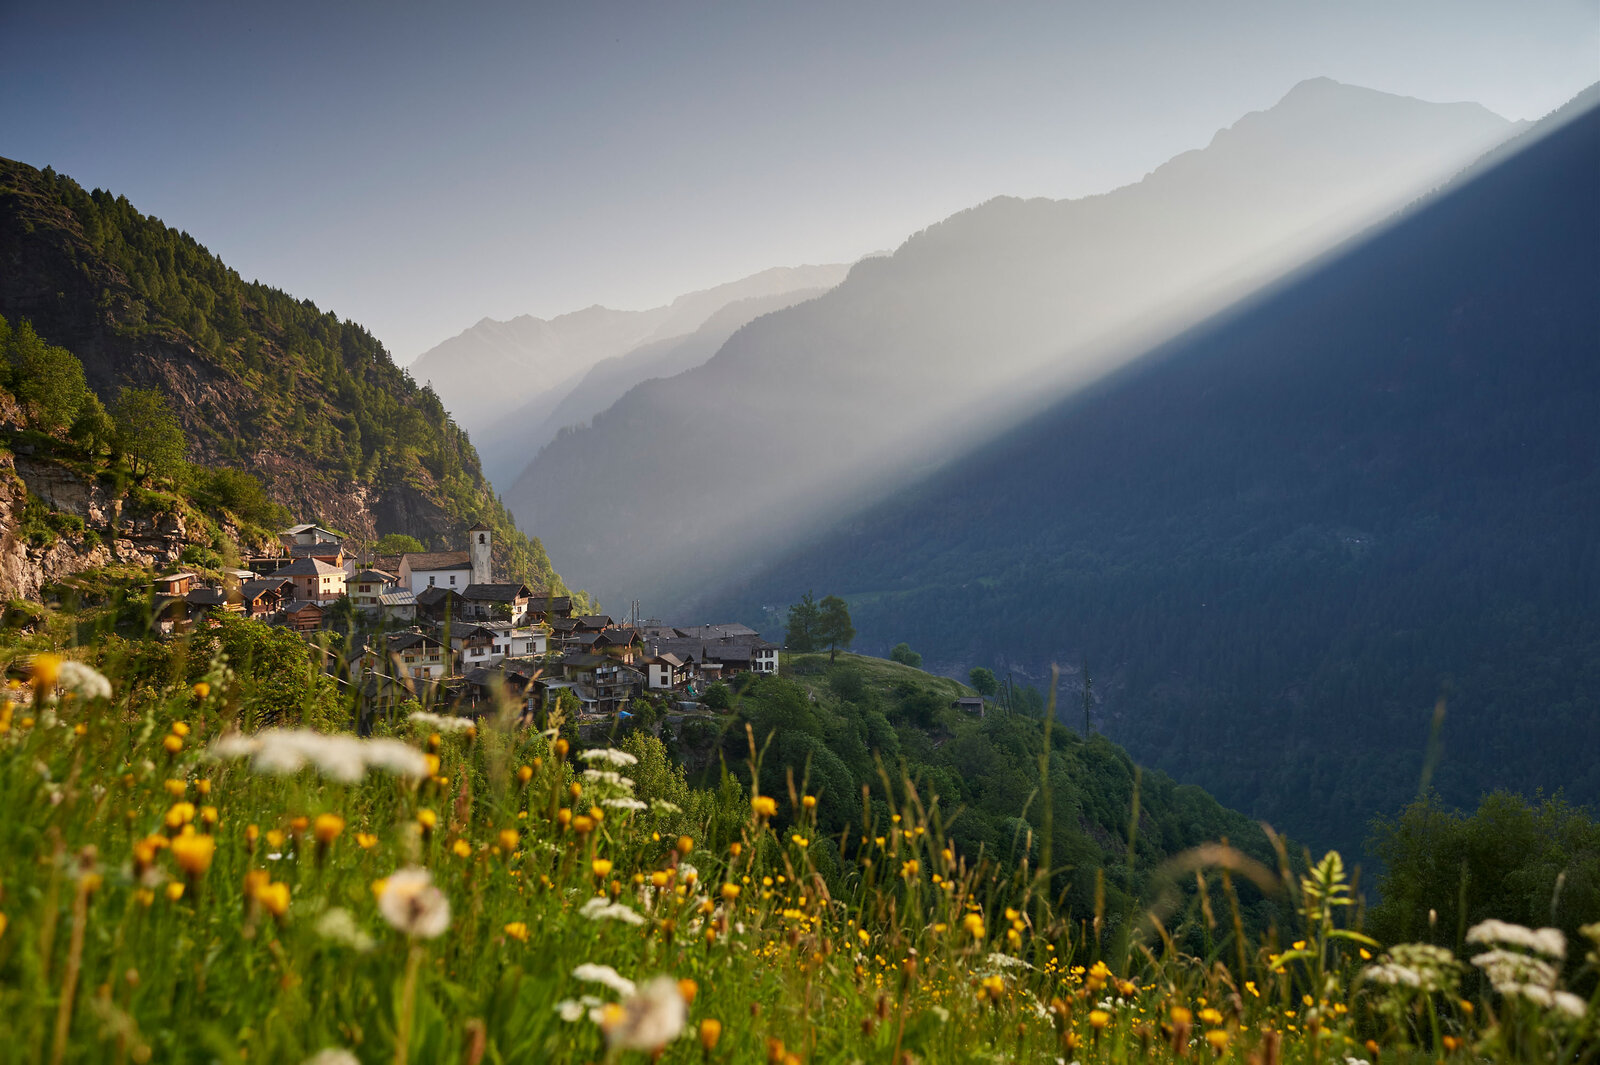  L'Osteria dans le village de montagne Landarenca de la vallée de Calanca. 